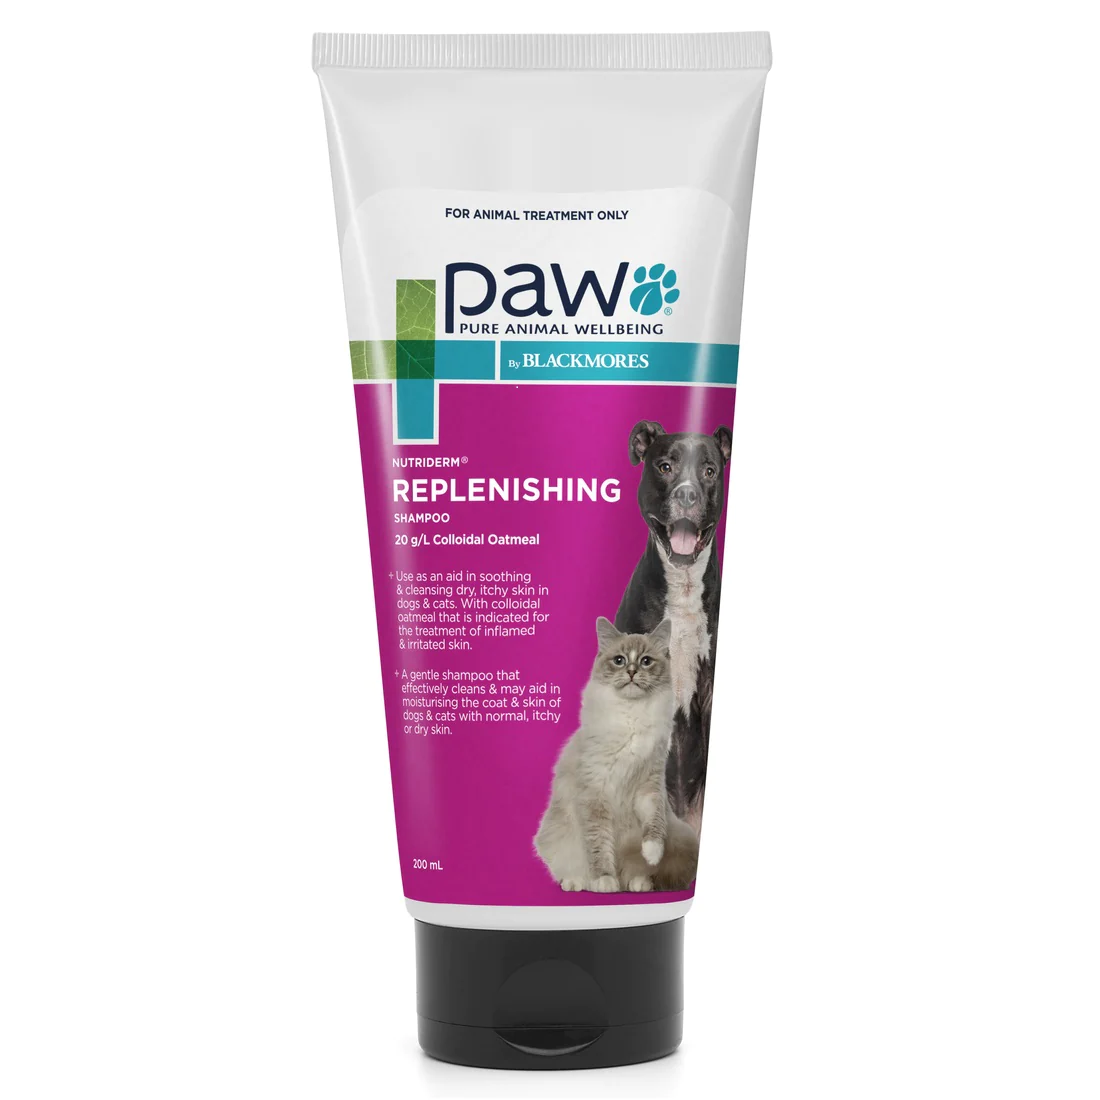 PAW By Blackmores NutriDerm Replenishing Shampoo - 200ml